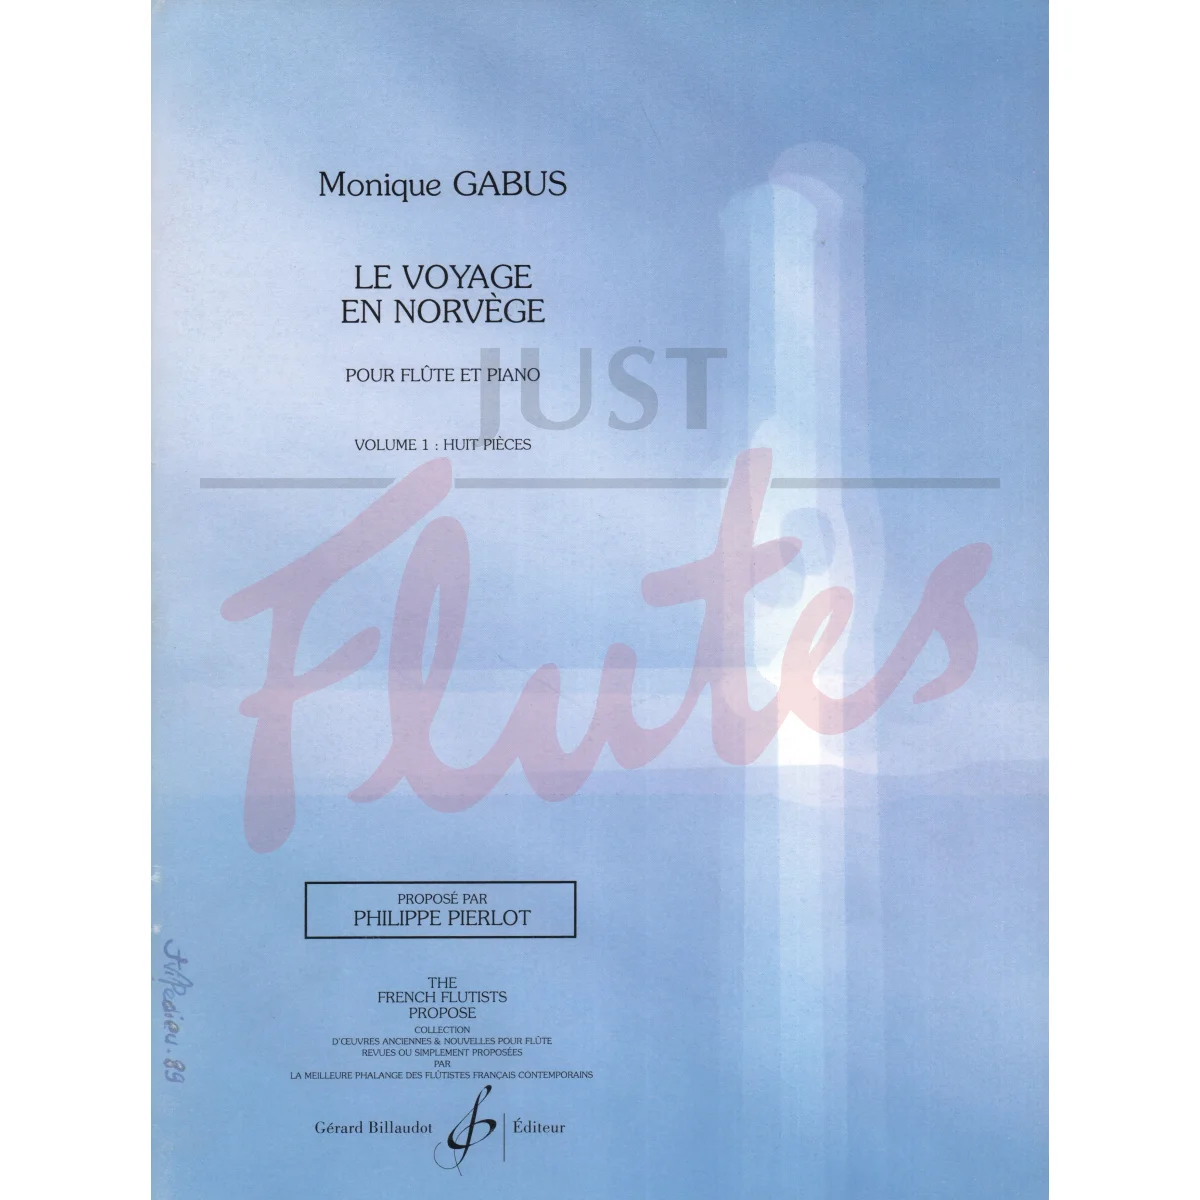 Le Voyage en Norvege for Flute and Piano Vol 1